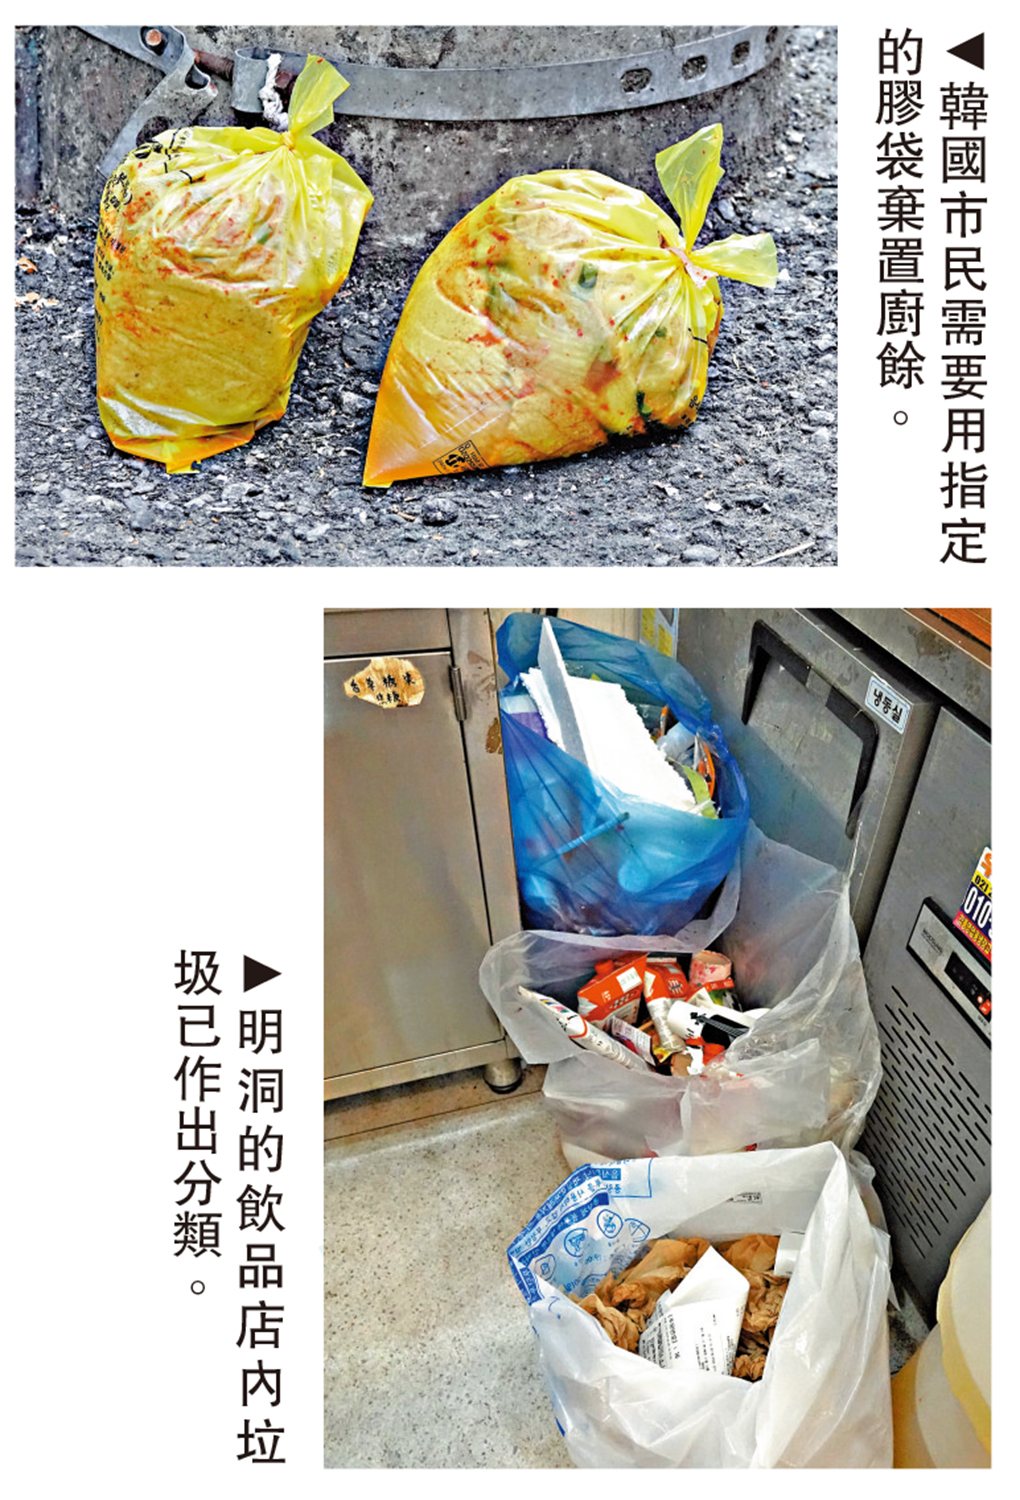 　　上圖：韓國市民需要用指定的膠袋棄置廚餘。下圖：明洞的飲品店內垃圾已作出分類。